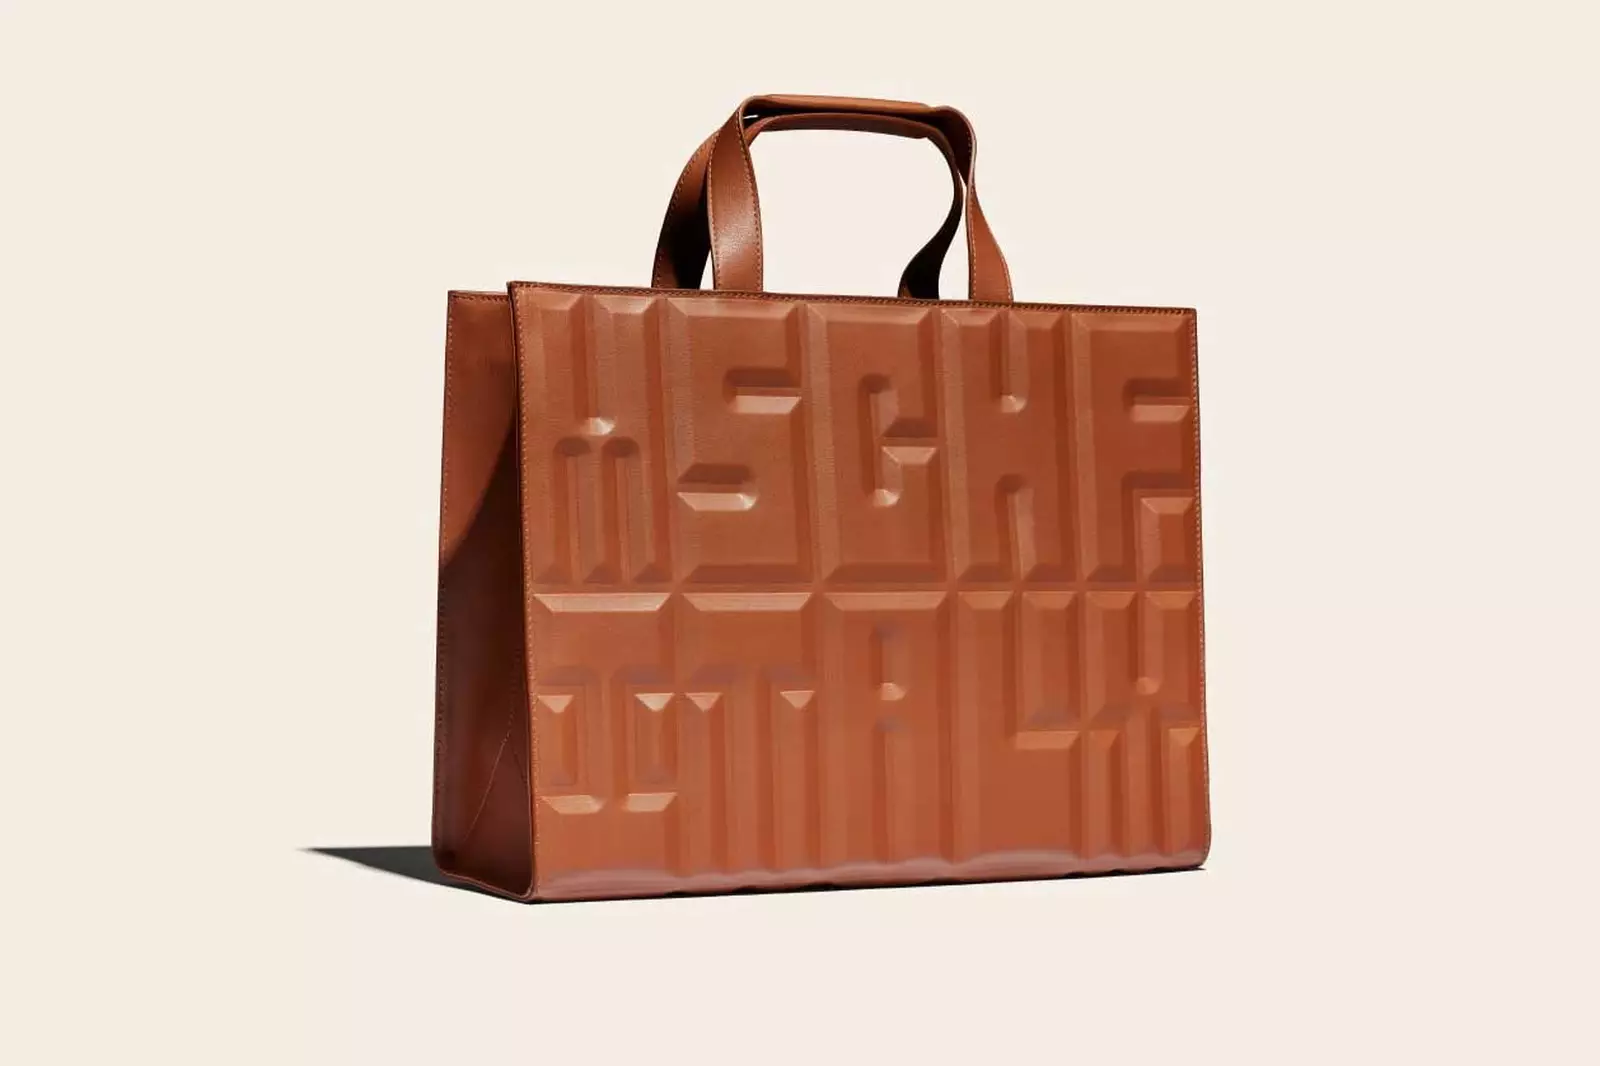 Art collective MSCHF releasing microscopic bootleg Louis Vuitton handbag,  Know more